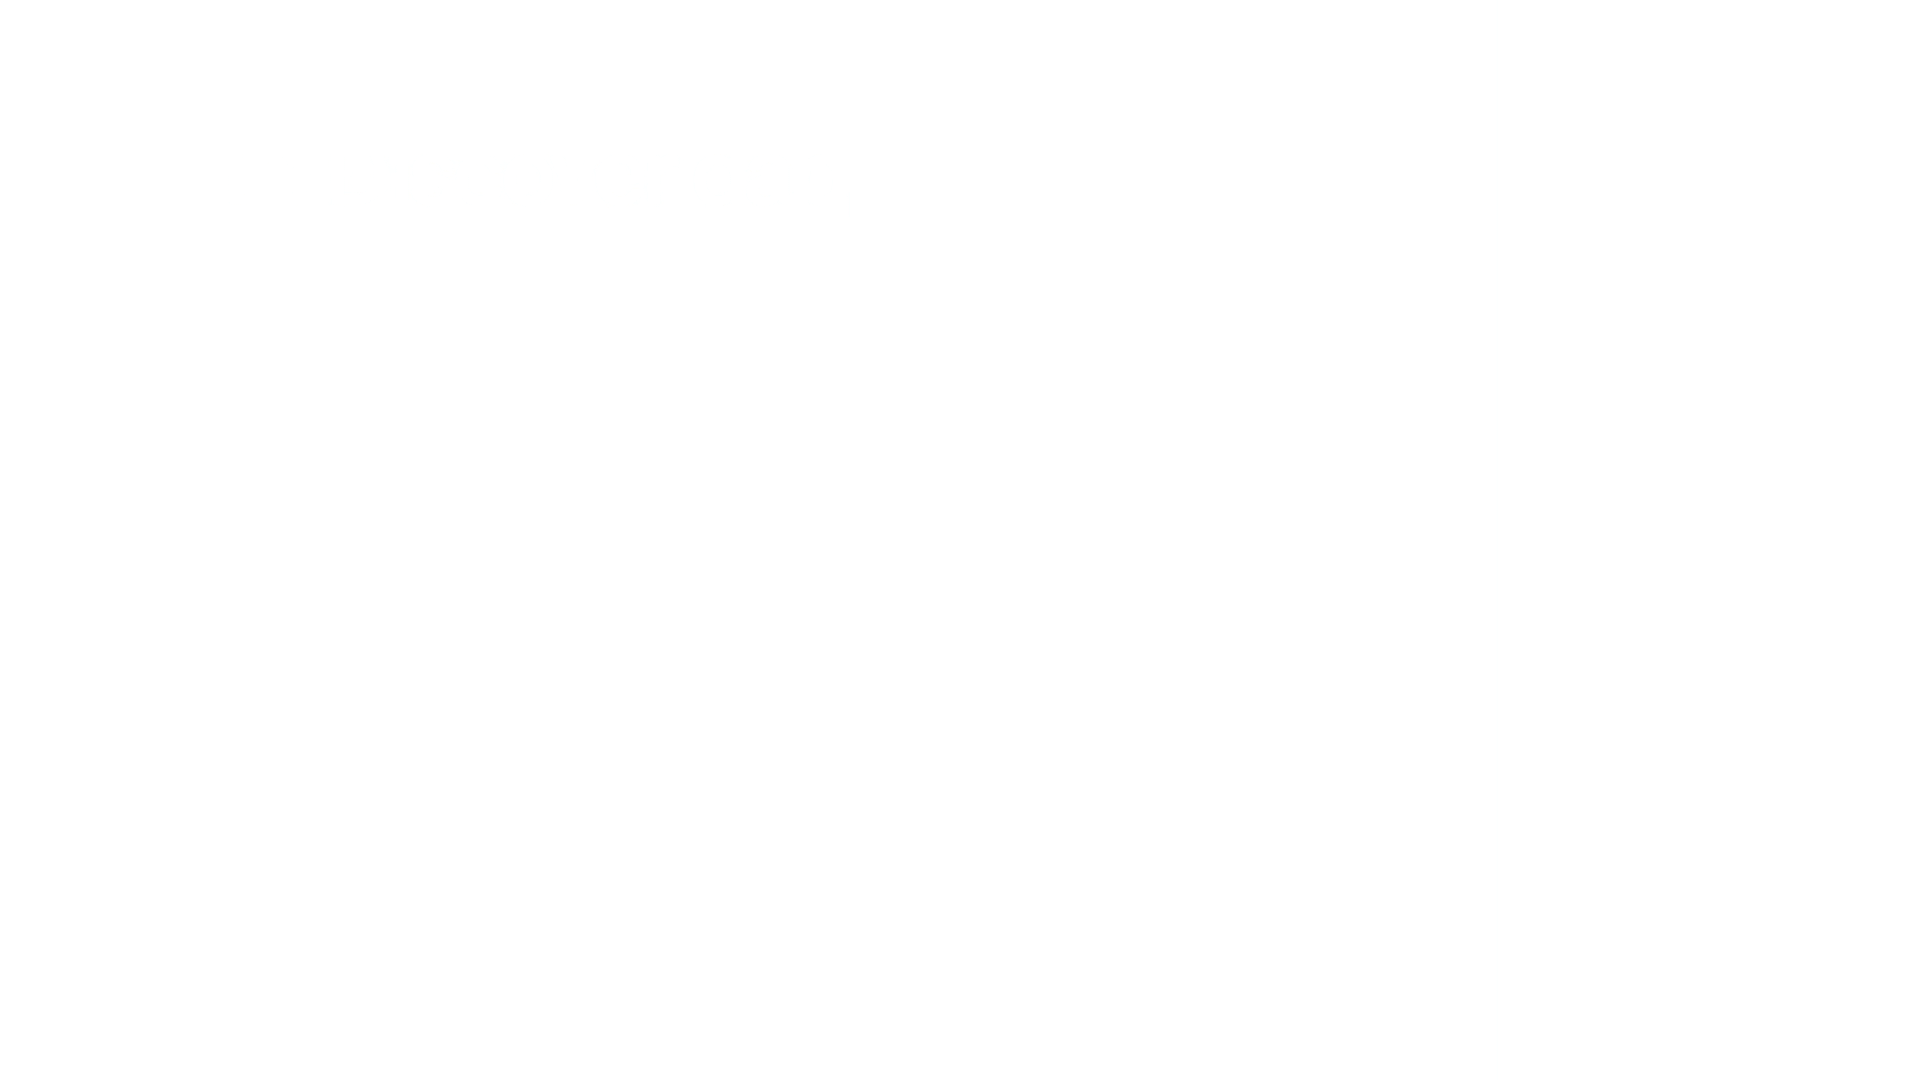 কয়েনবেস অ্যাপ প্ল্যাটোব্লকচেন ডেটা ইন্টেলিজেন্সের মাধ্যমে ওয়েব3 অ্যাক্সেস করুন। উল্লম্ব অনুসন্ধান. আ.